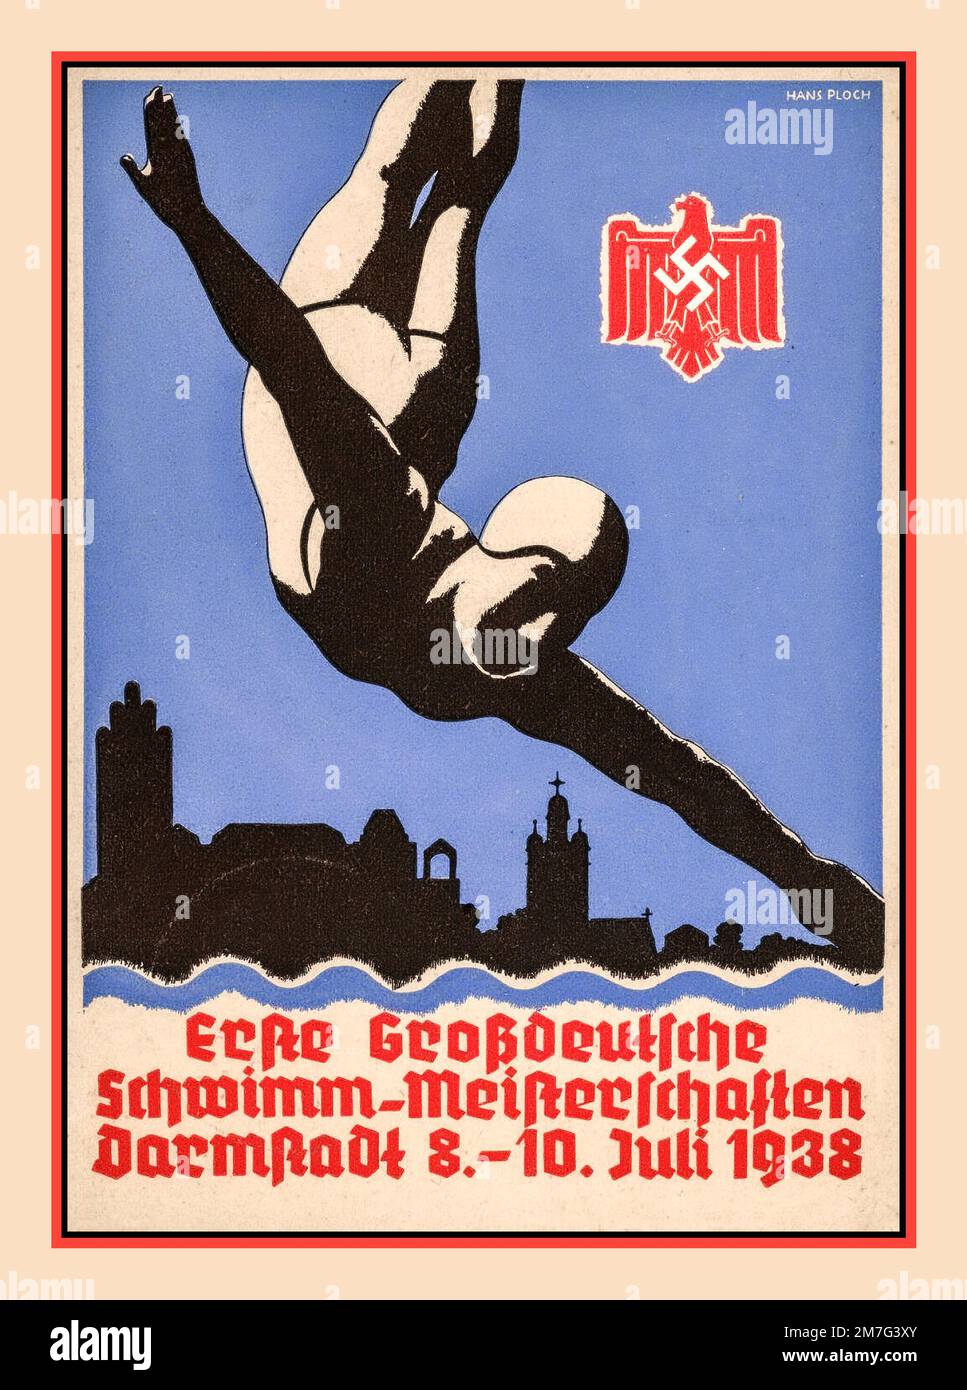 1938 Nazi-Sportposter „Schwimmmmeisterschaft In Deutschland“ Darmstadt 8.-10. Juli 1938 Propagandaposter für Nazi-Schwimmsport mit Nazi-Deutschland-Adler und Swastika-Emblem Stockfoto